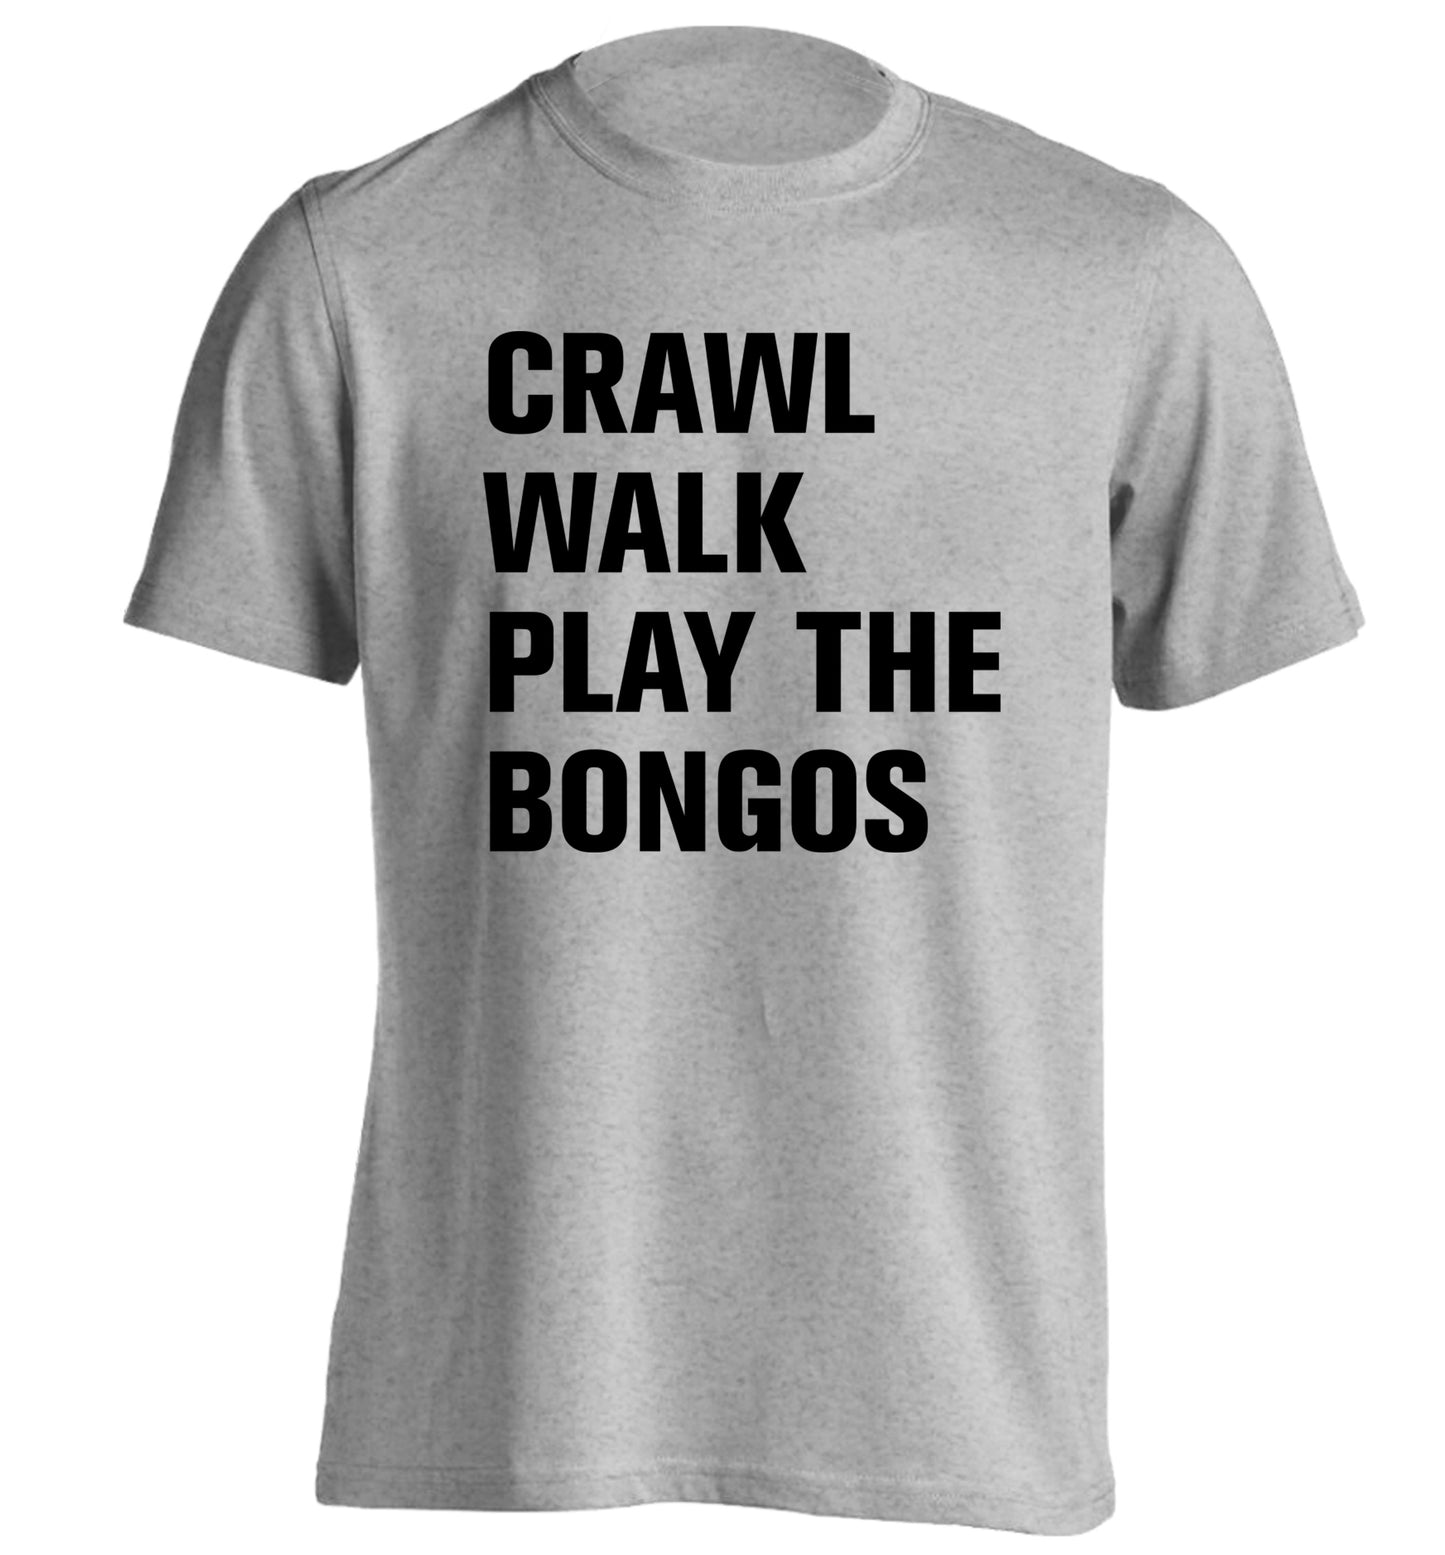 Crawl Walk Play Bongos adults unisex grey Tshirt 2XL